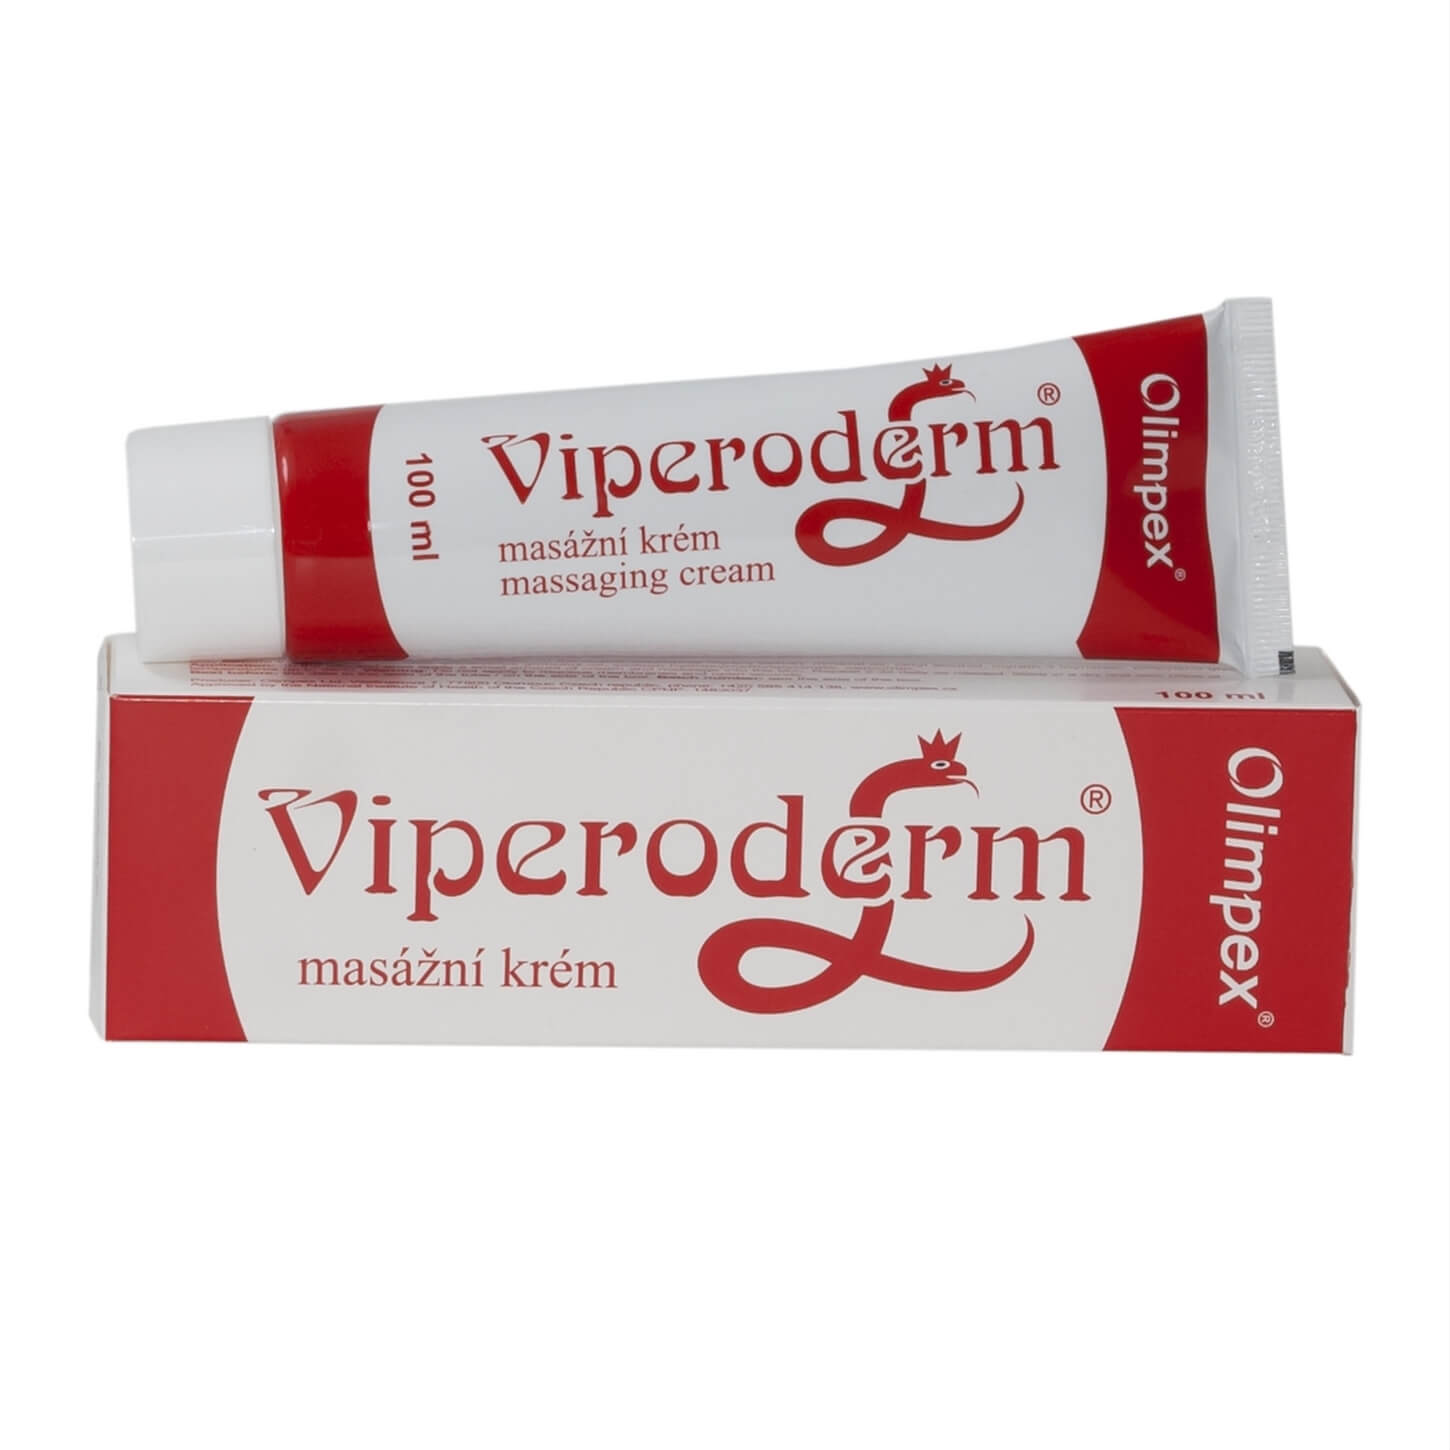 Купить крем. Viperoderm. Olimpex Viperoderm крем со змеиным ядом 100 ml. Массажный крем Радиан. Viperoderm для чего.